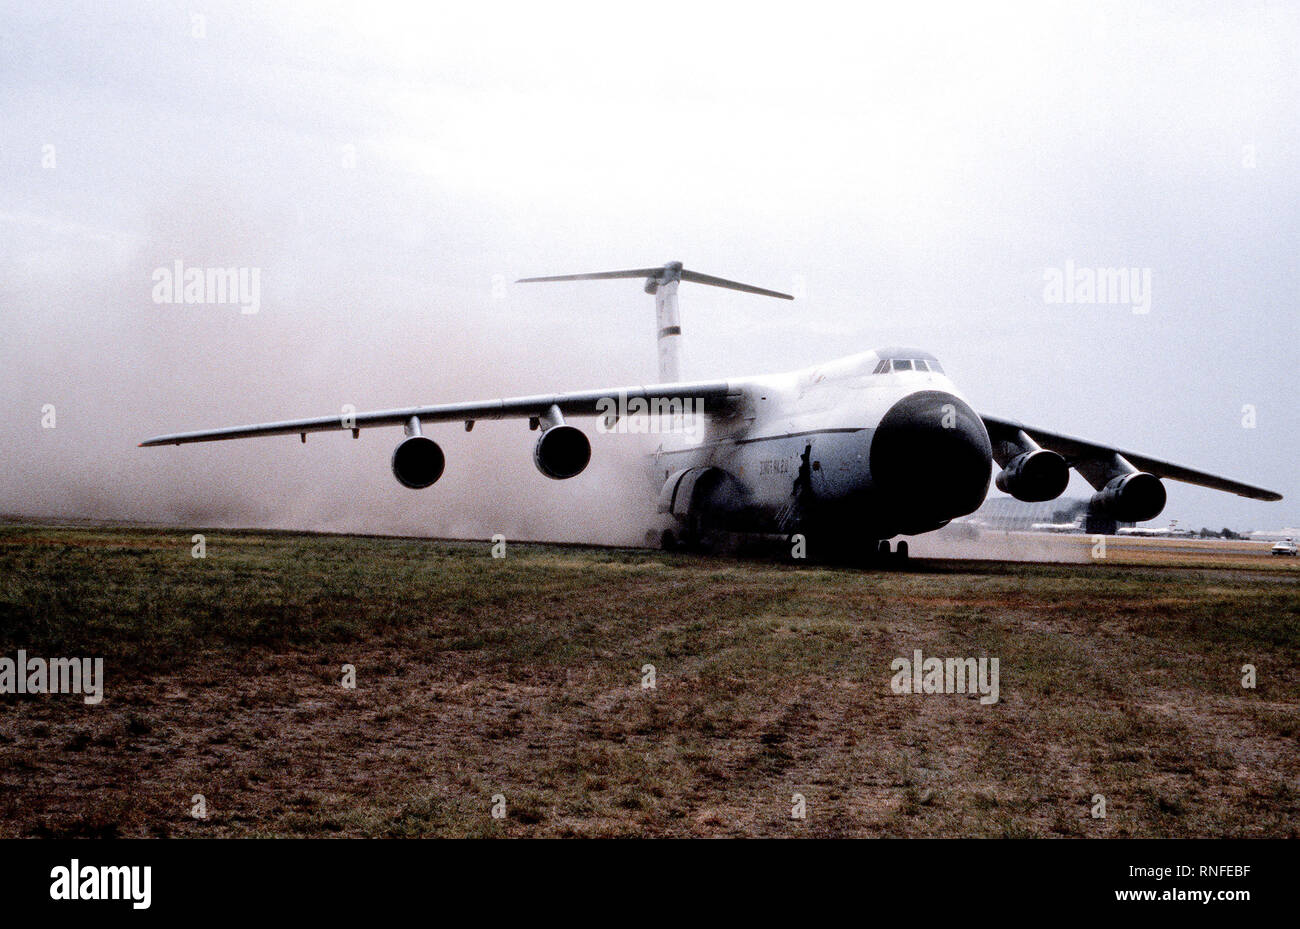 C-5A utilité opérationnelle - un test d'évaluation vue avant gauche d'un C-5A Galaxy de circulation au sol des aéronefs dans la terre au cours d'un test d'évaluation de l'utilité opérationnelle. Banque D'Images